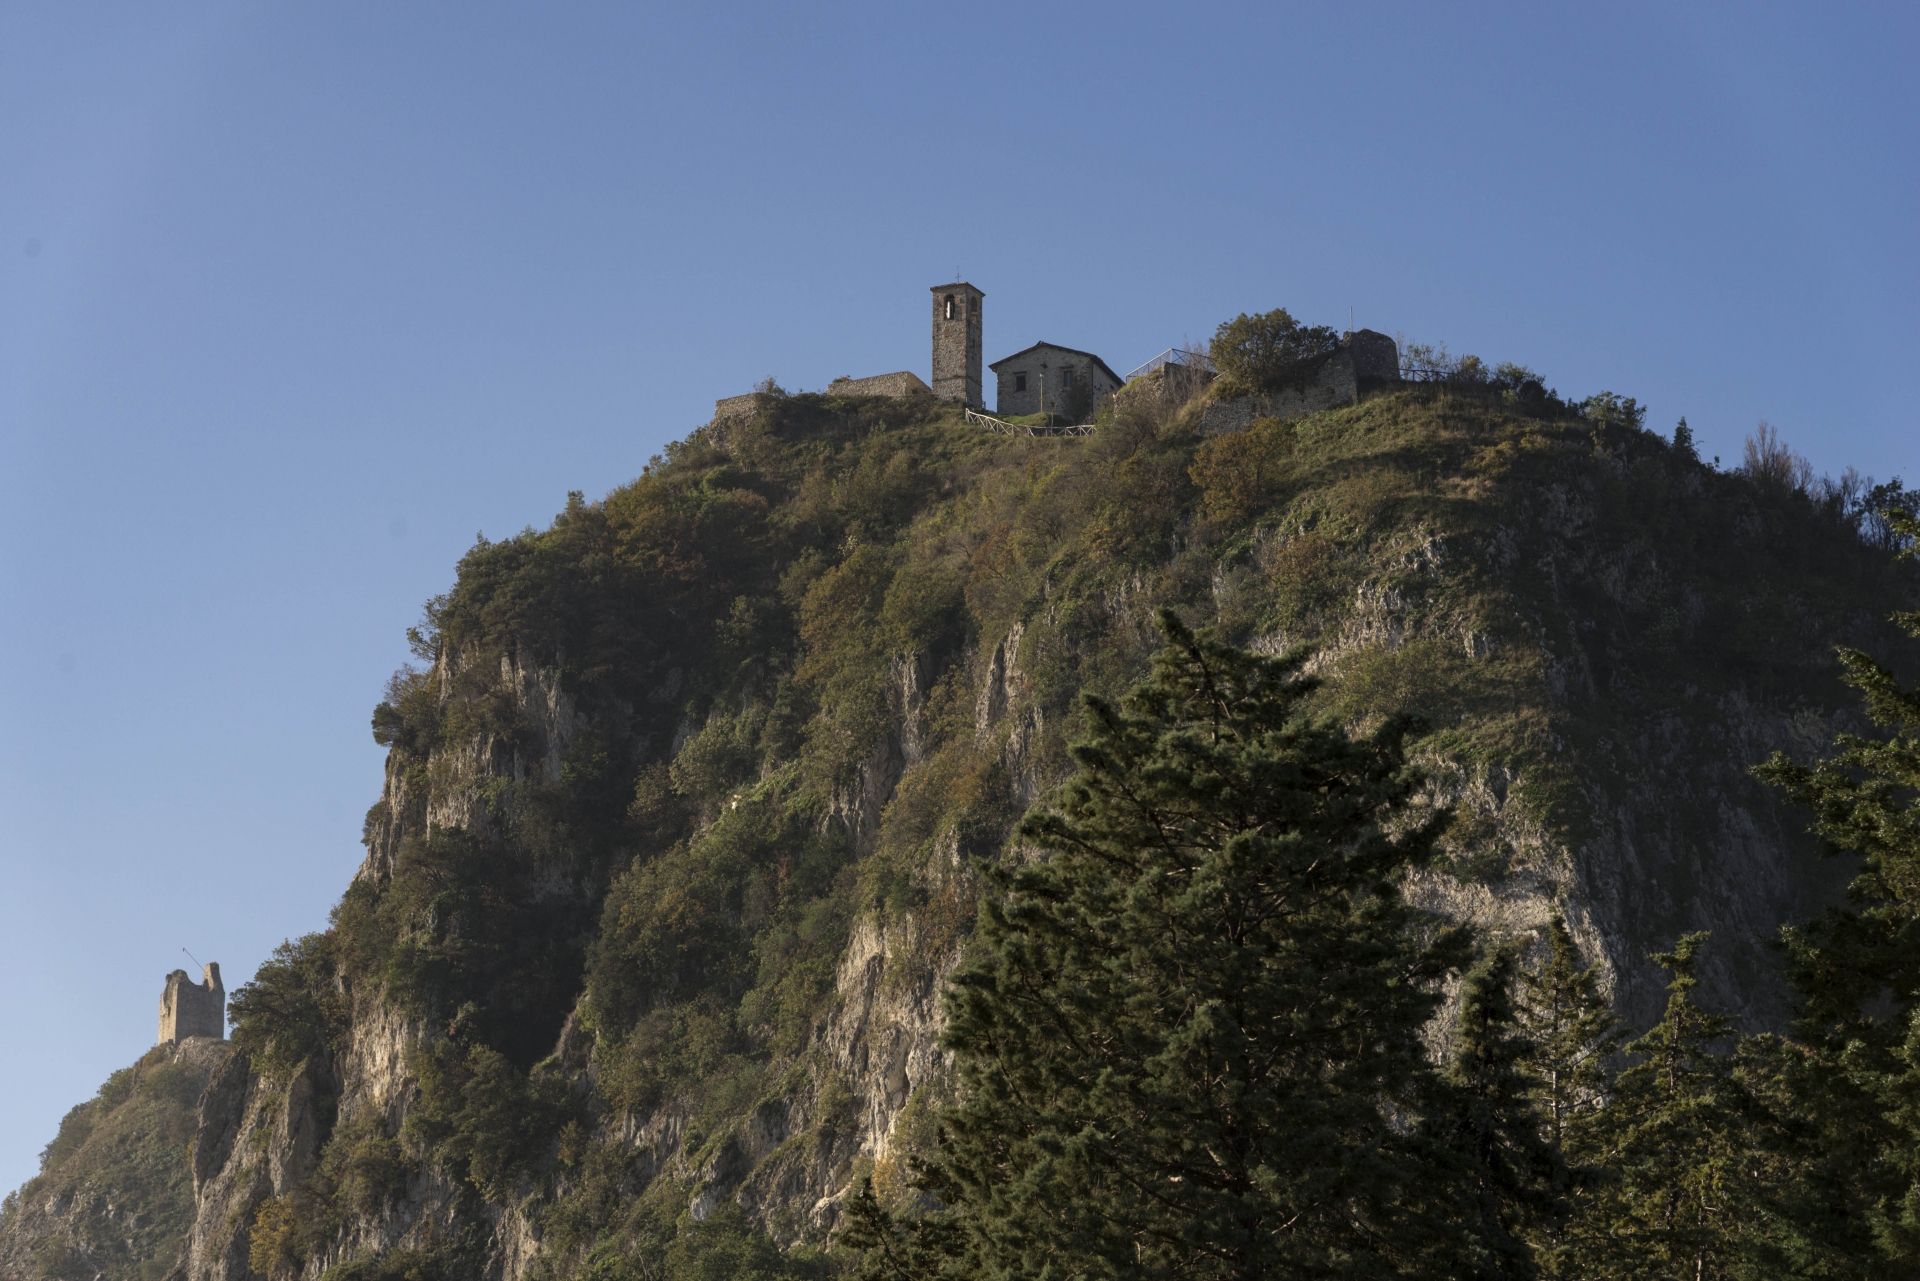 Poggio Torriana | Valmarecchia | Torre photos de Riccardo Gallini